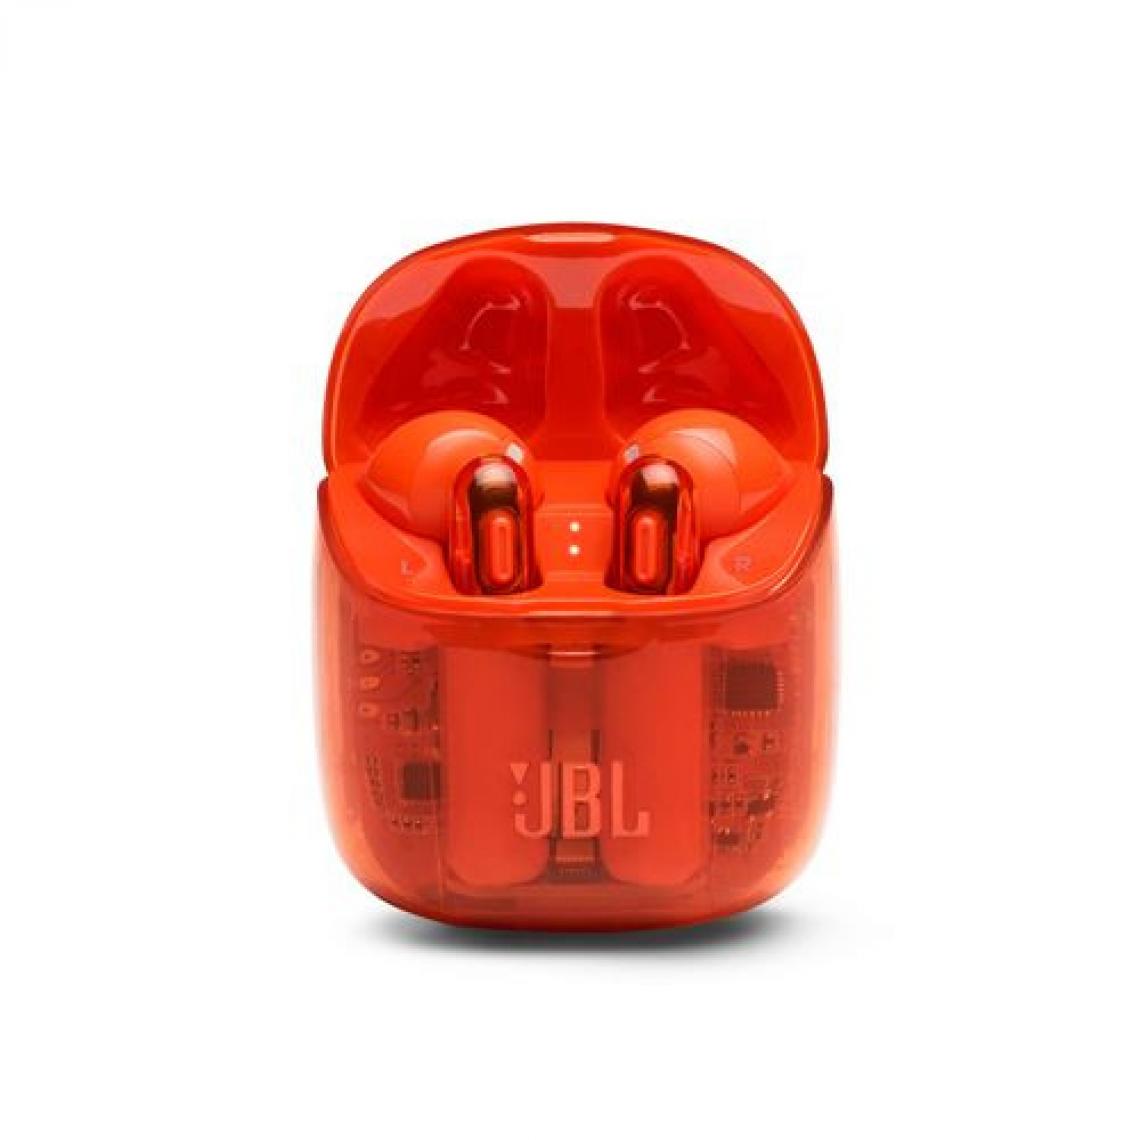 JBL - Ecouteurs intra auriculaires sans fil True wireless JBL Tune 225 Noir Orange - Ecouteurs intra-auriculaires